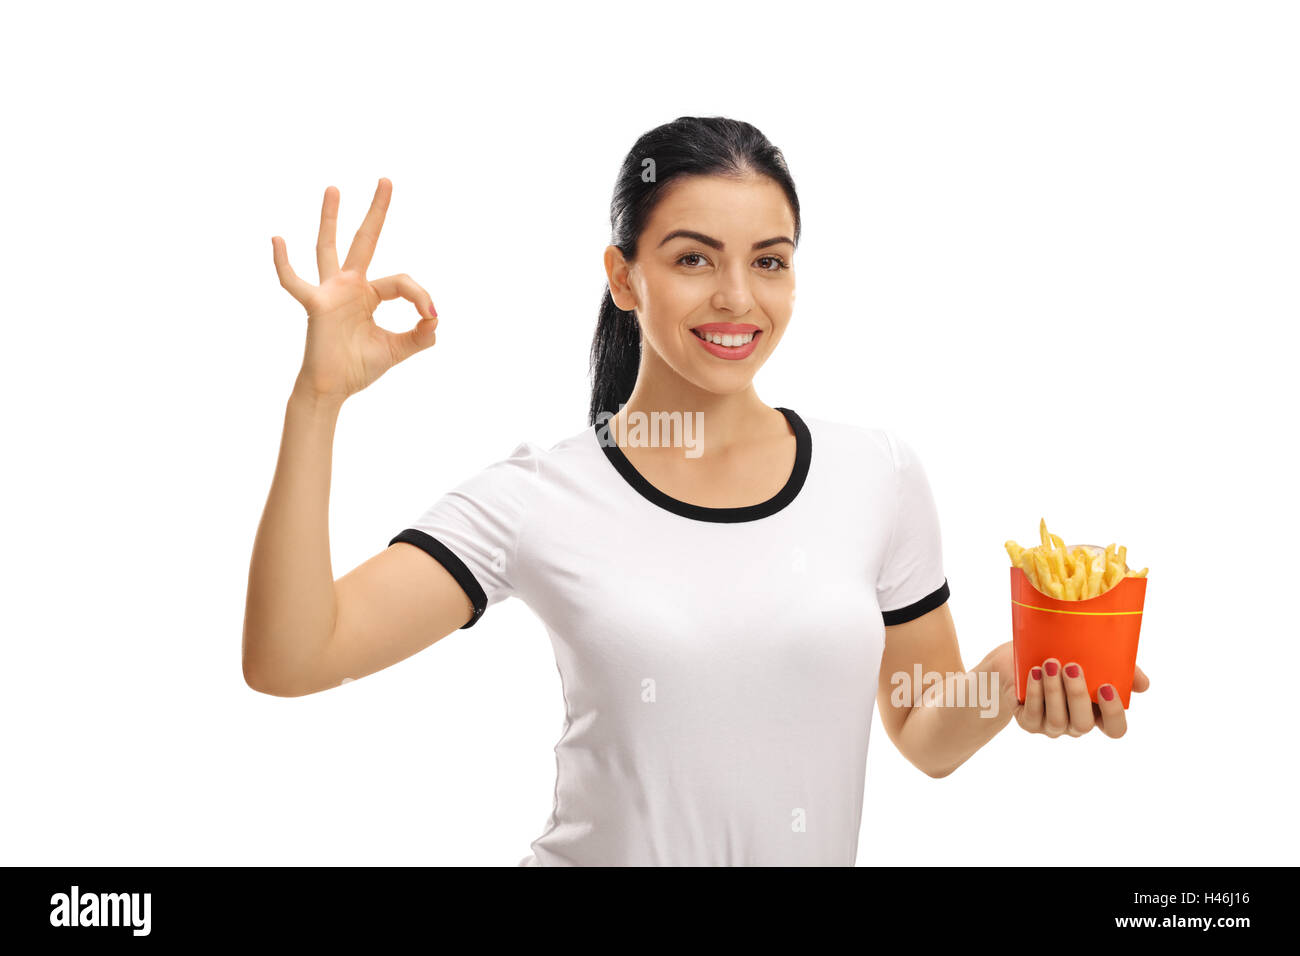 Glückliche Frau hält einen Beutel mit Pommes Frites und eine Ordnung Geste isoliert auf weißem Hintergrund Stockfoto